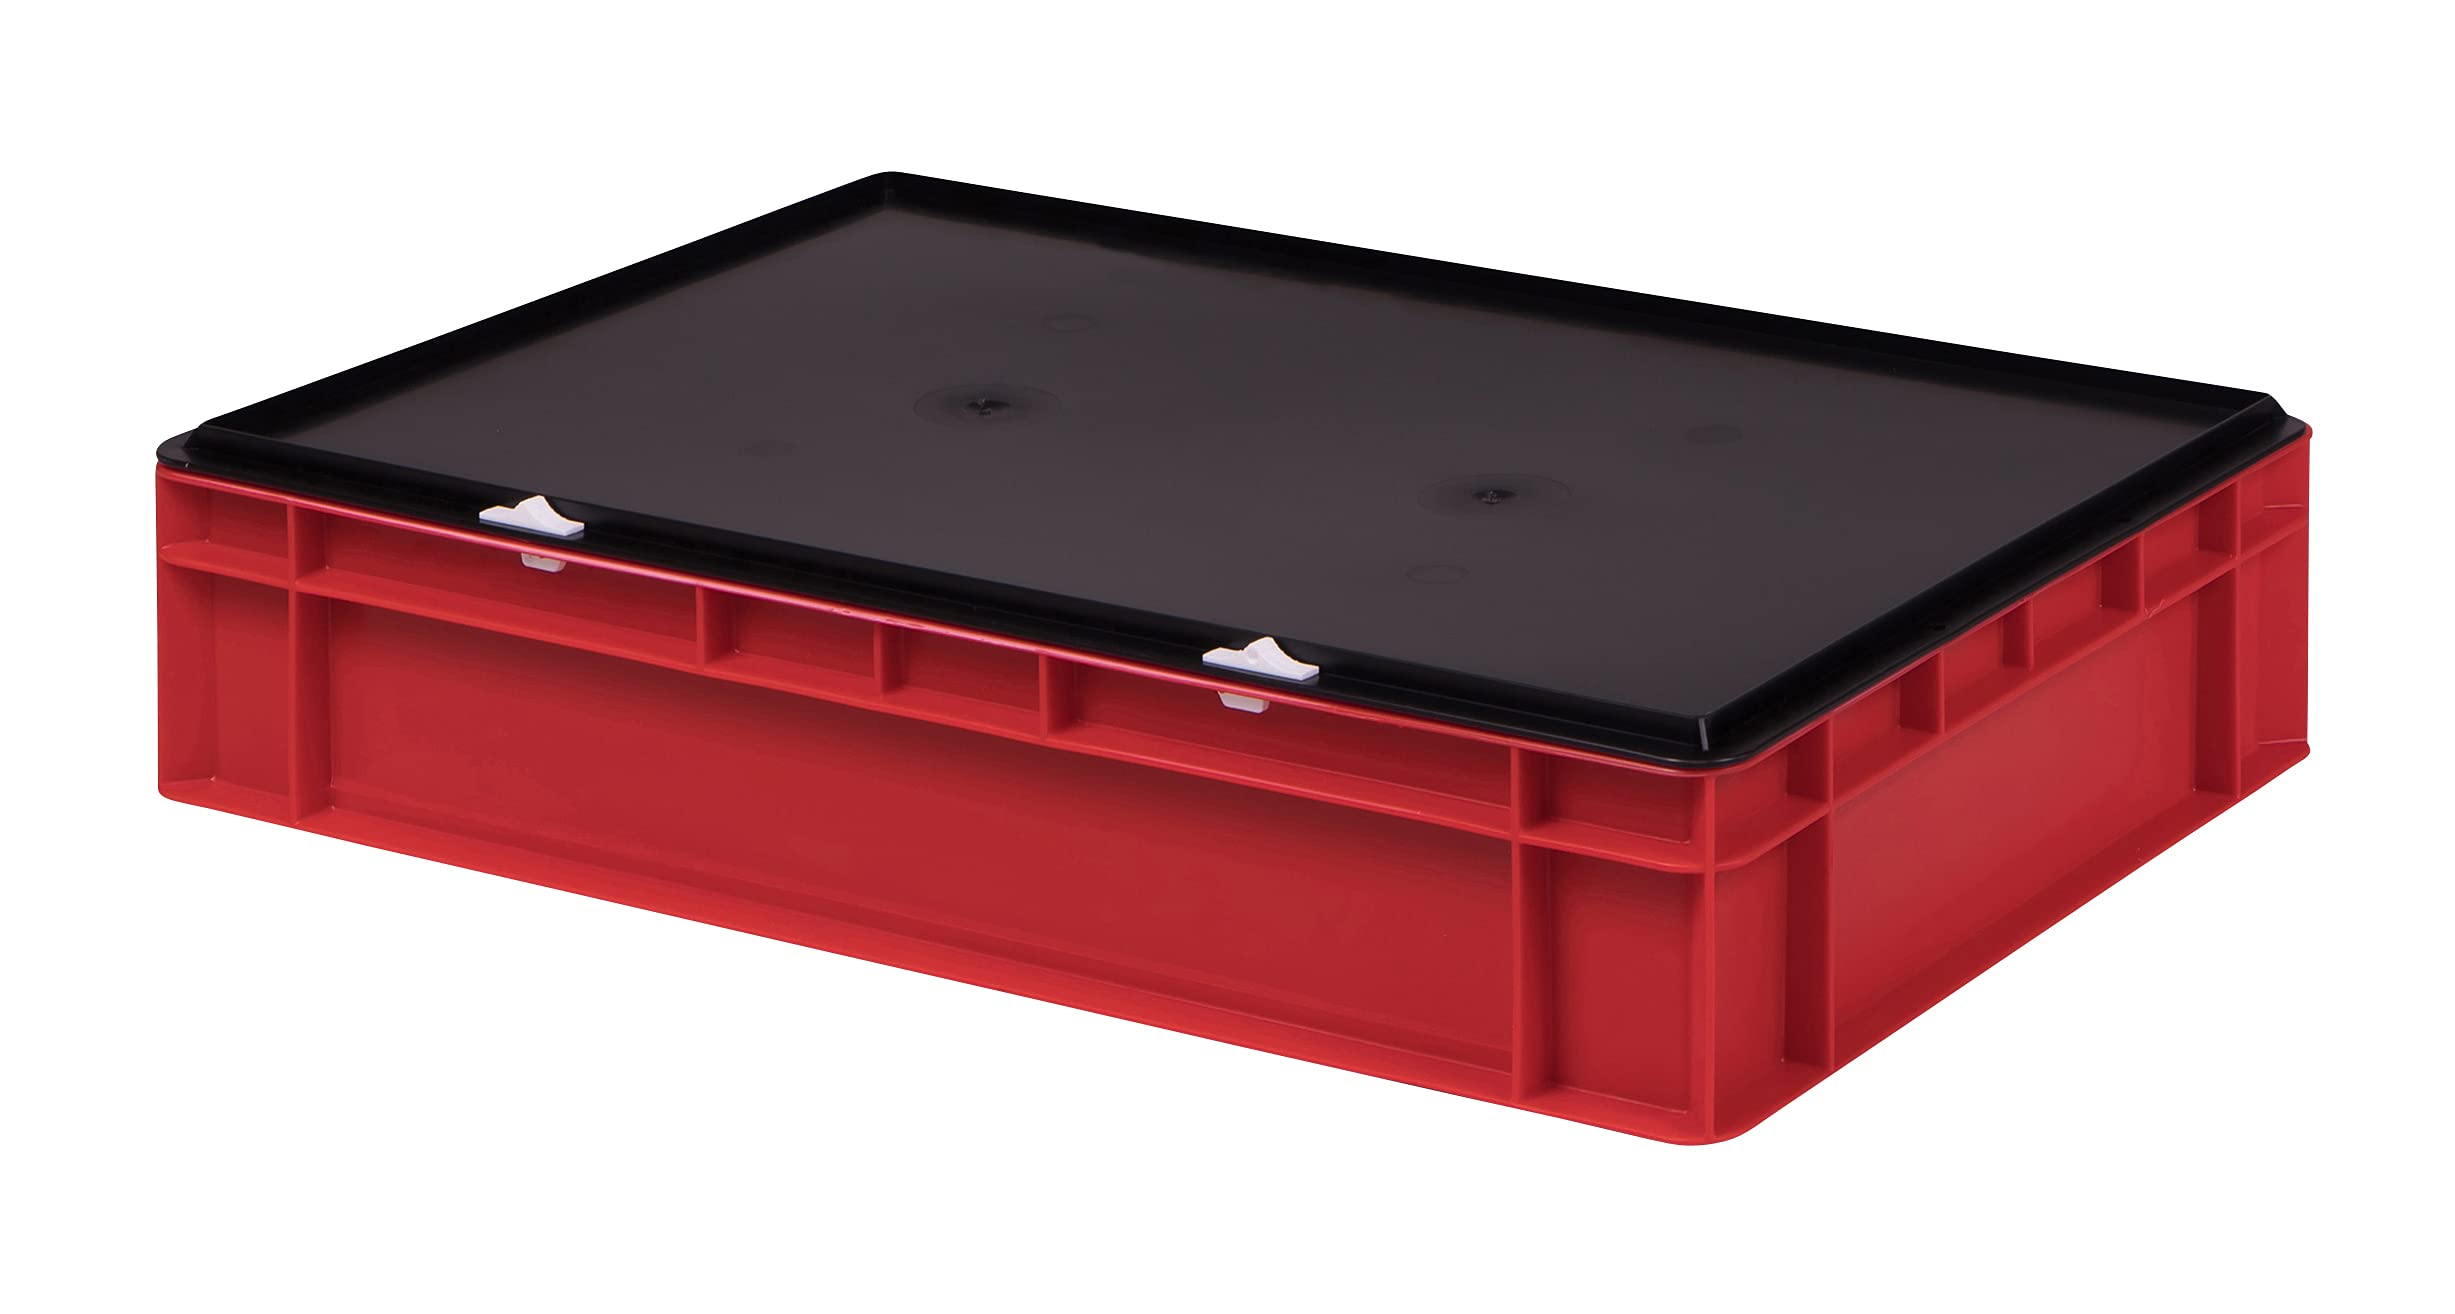 1a-TopStore Stabile Profi Aufbewahrungsbox Stapelbox Eurobox Stapelkiste mit Deckel, Kunststoffkiste lieferbar in 5 Farben und 21 Größen für Industrie, Gewerbe, Haushalt (rot, 60x40x13 cm)